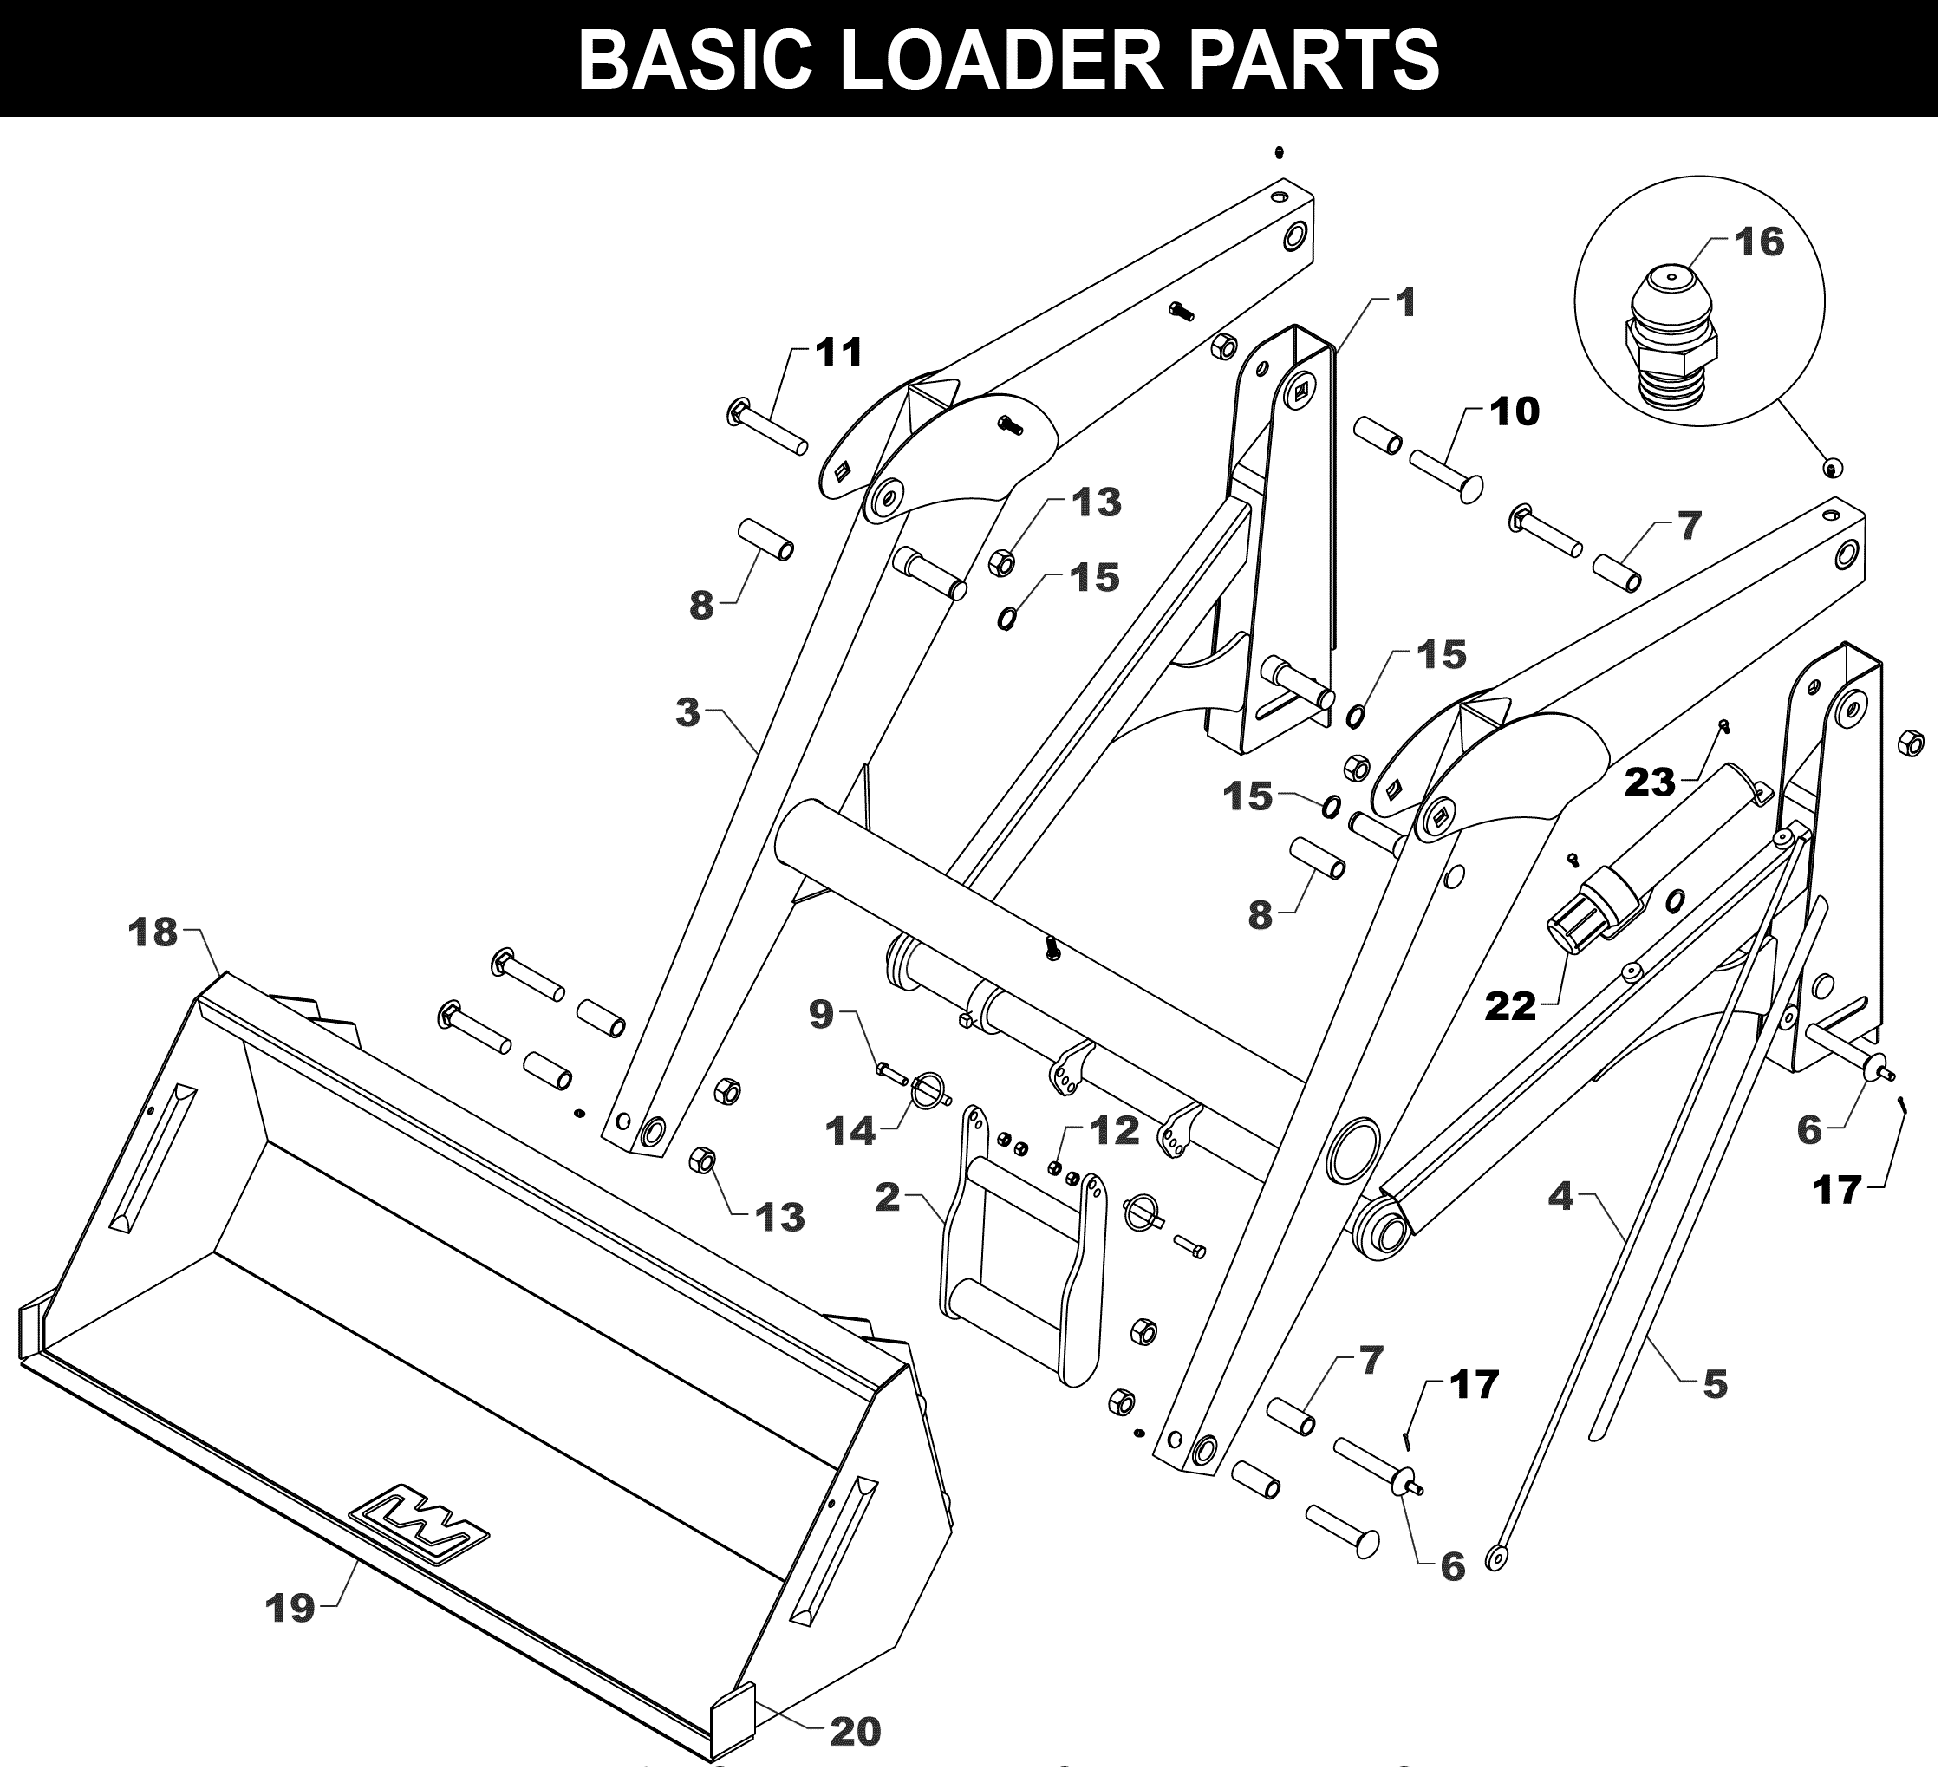 TA-52 Basic Loader Parts